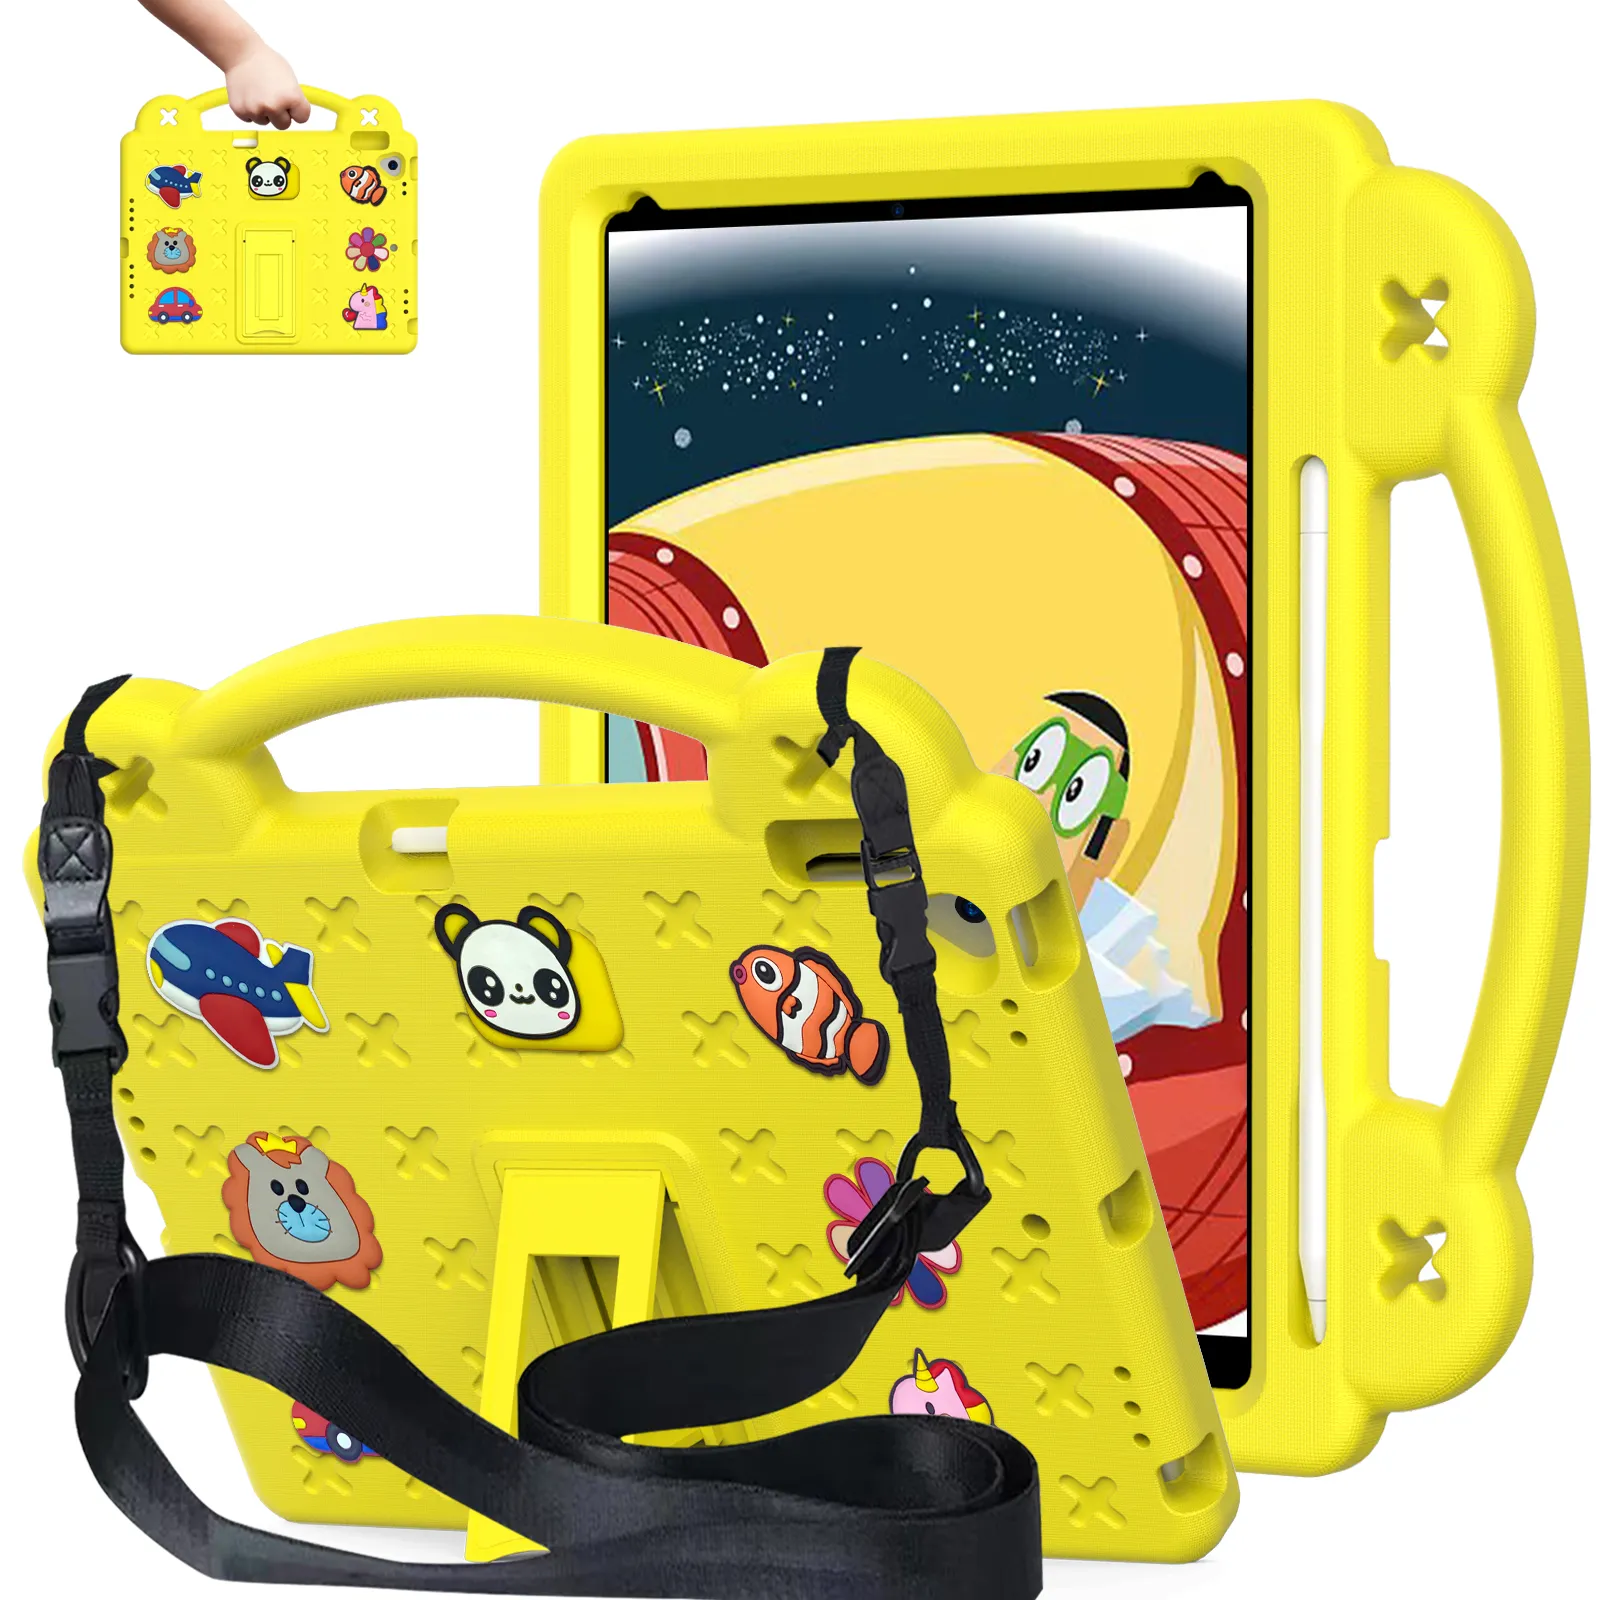 iPad Kids Case Eva Drop-Prof-Schockdicht mit Schultergurt mit Kickstand Griff Kinder freundliche Schutz Tablet Deckhülle für Mini 123456 Air 10.2 10,5 Pro 11 Zoll